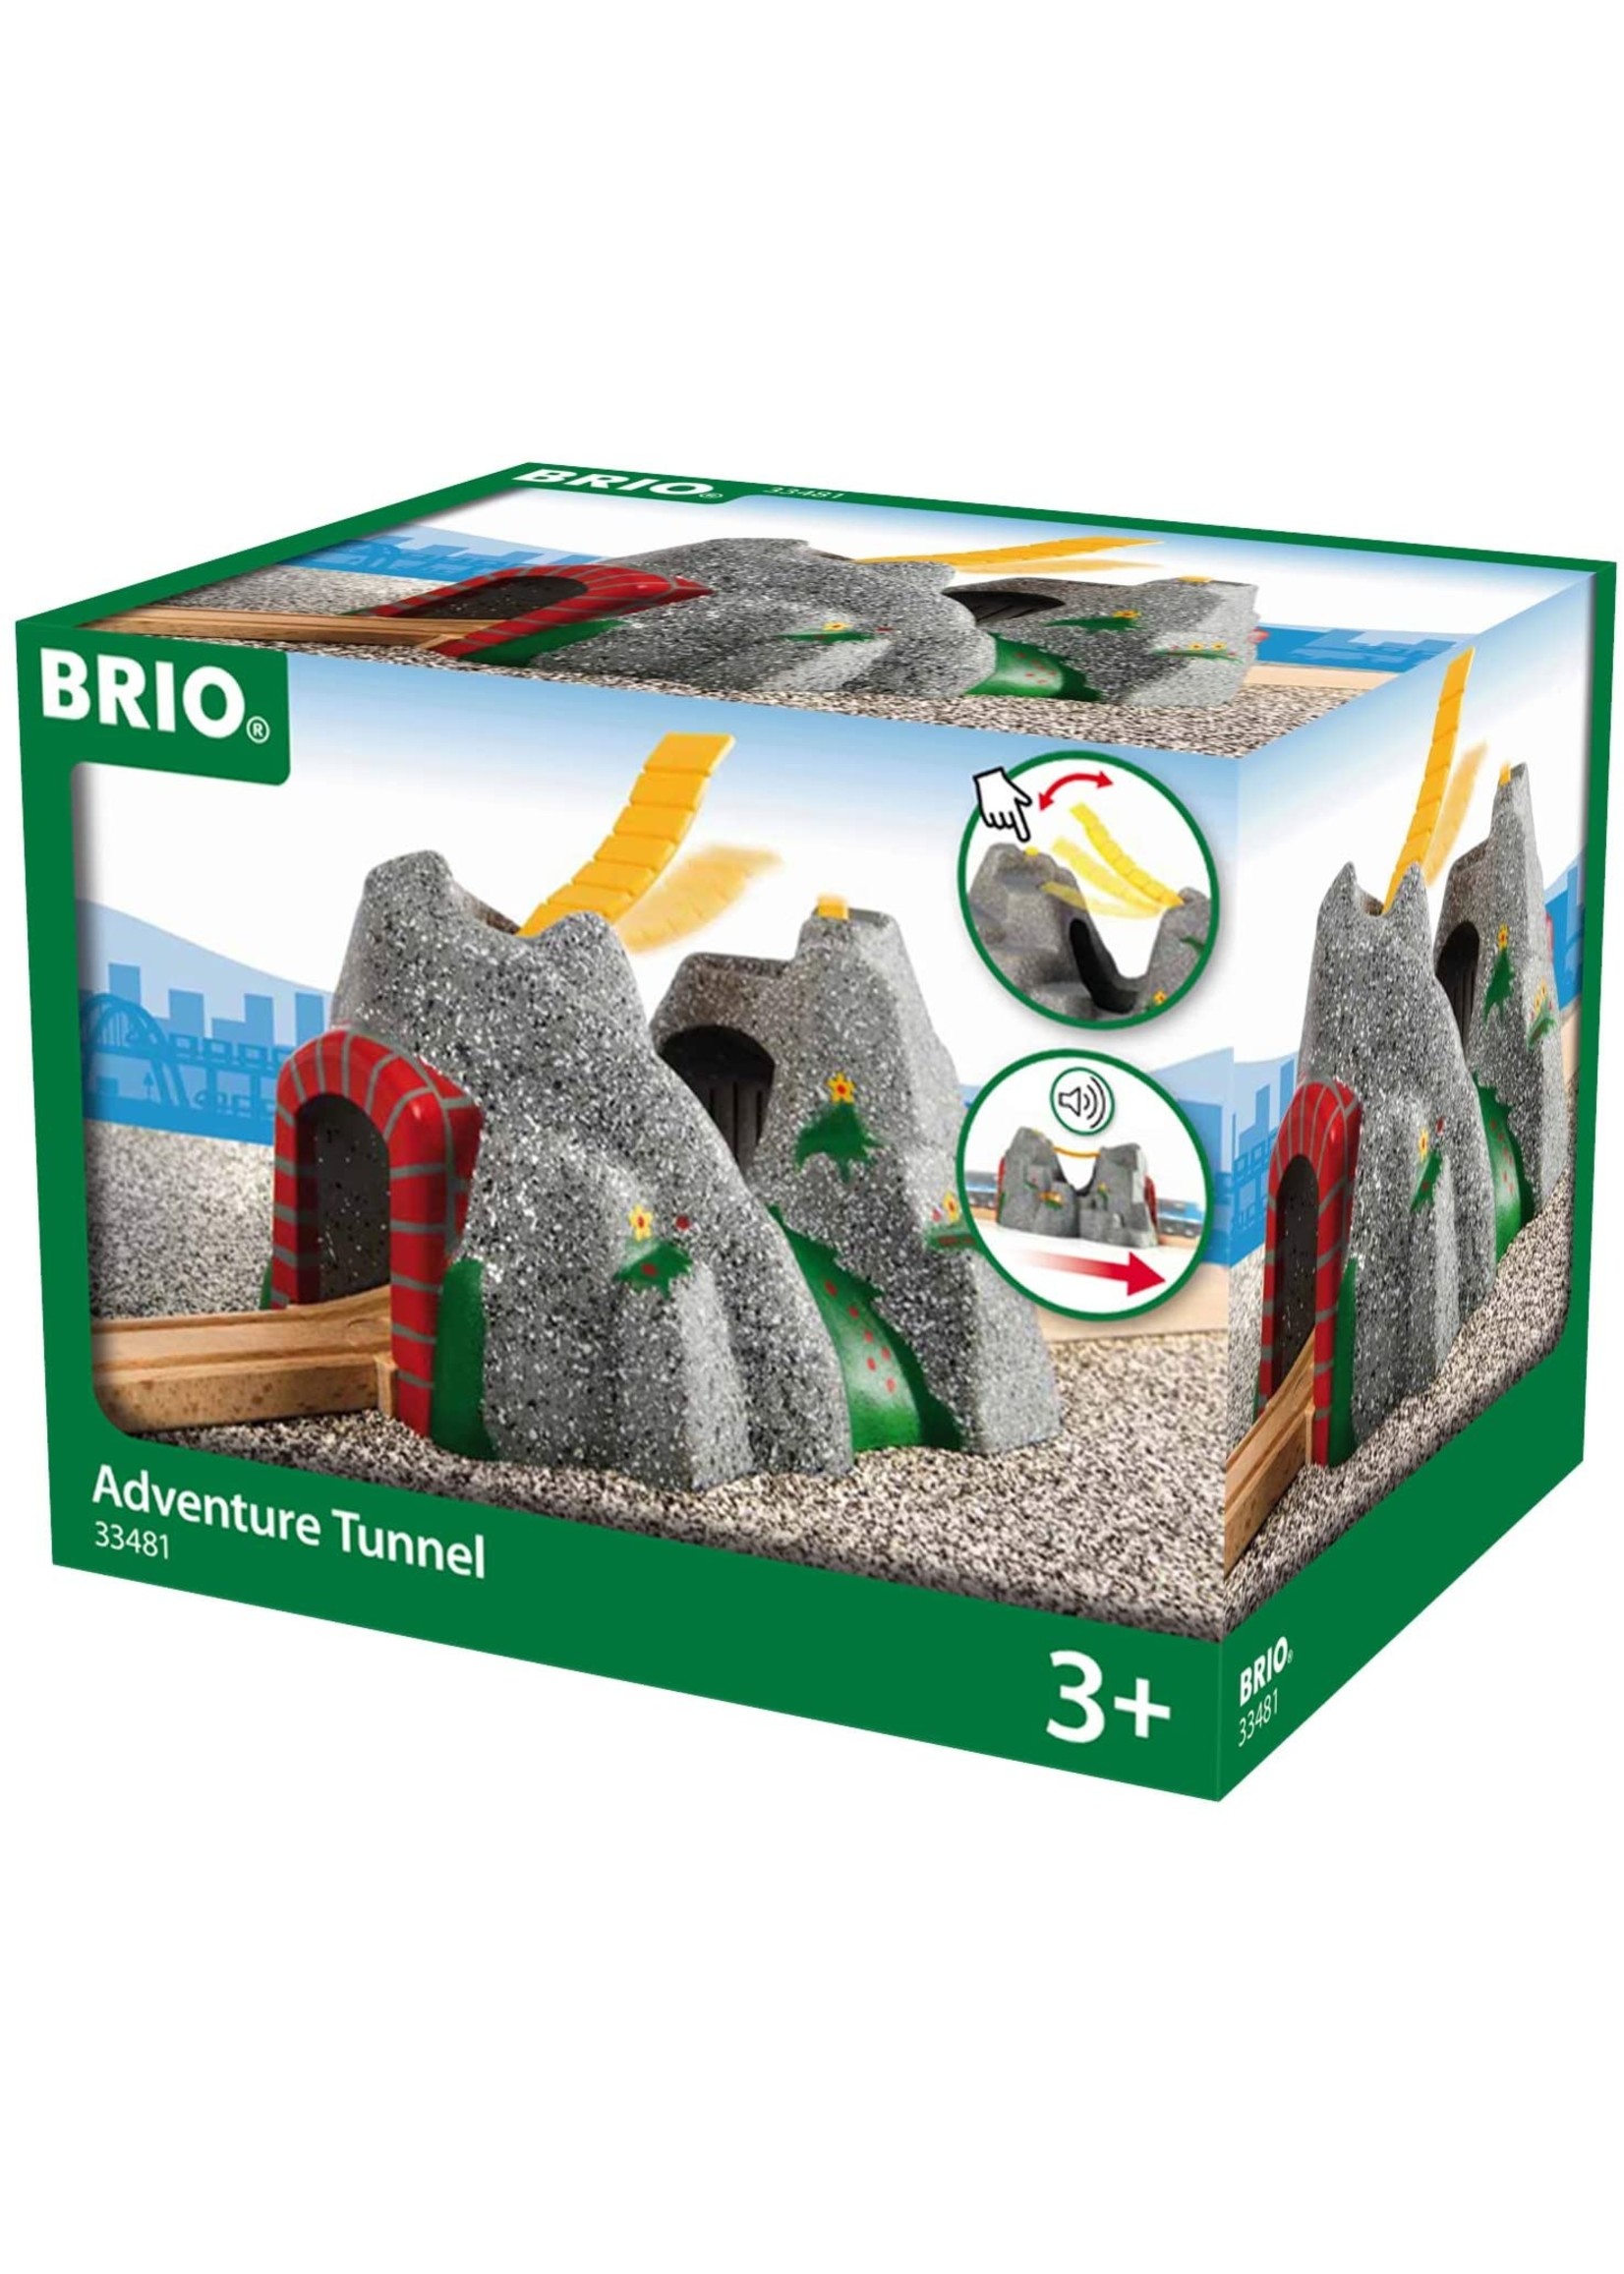 Brio 33481 - Adventure Tunnel